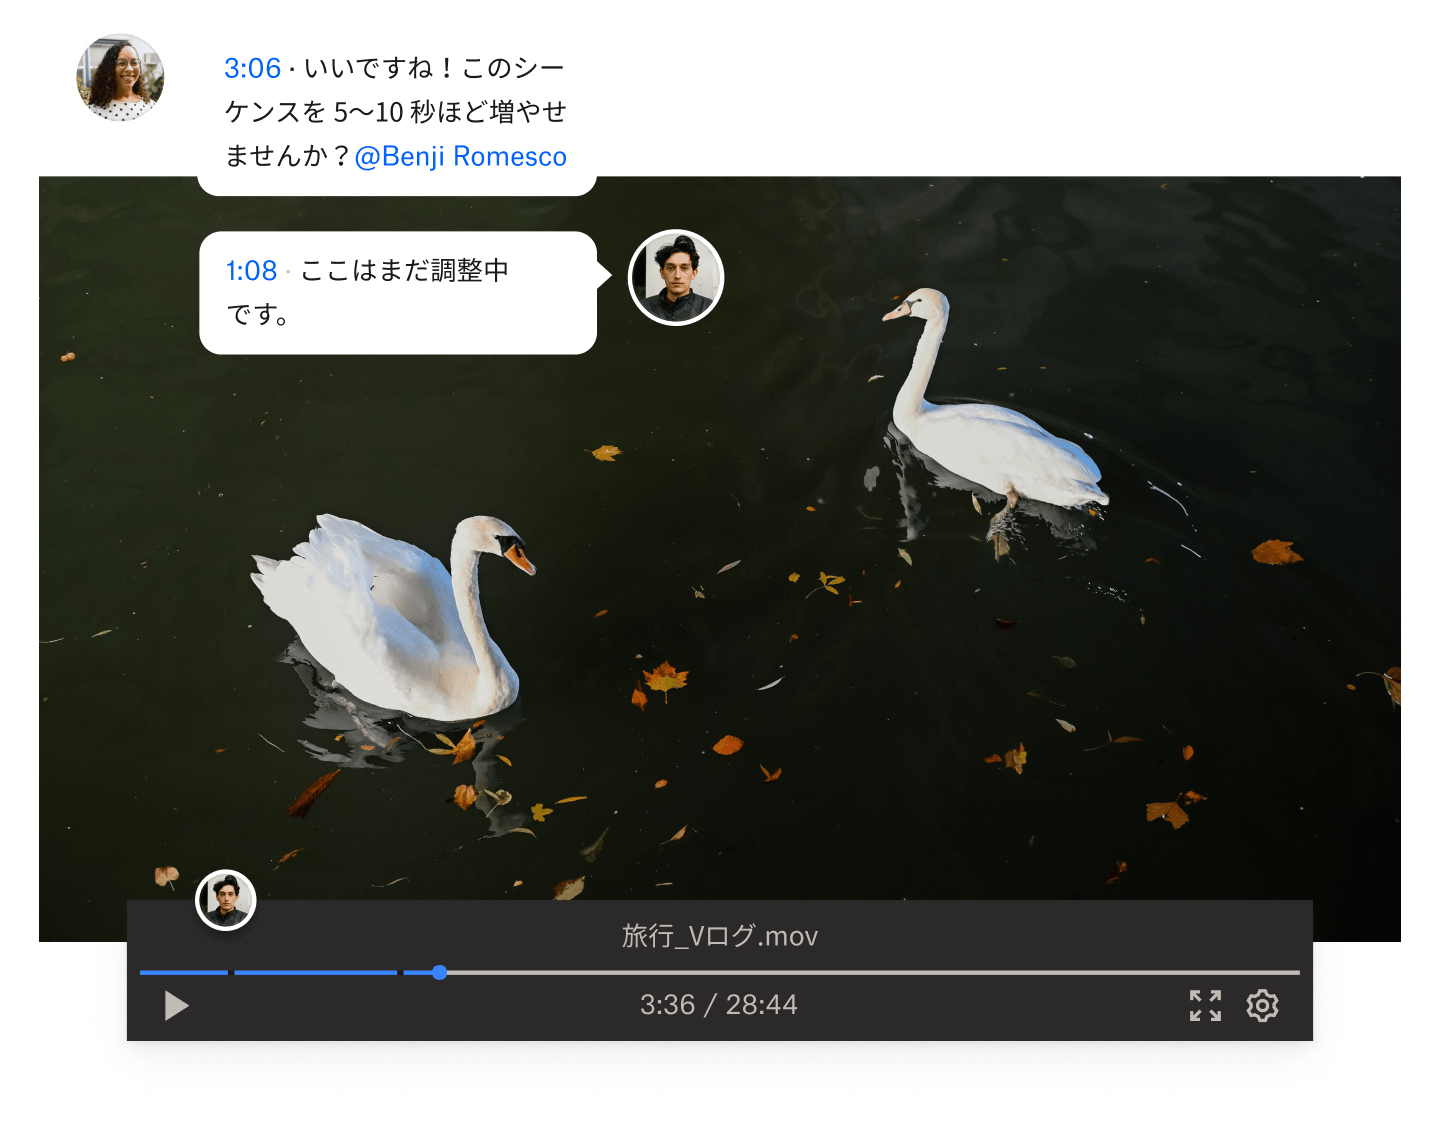 2 羽の白鳥が泳いでいる動画に重ねてタイム スタンプ付きのコメントが表示されている、動画の静止画